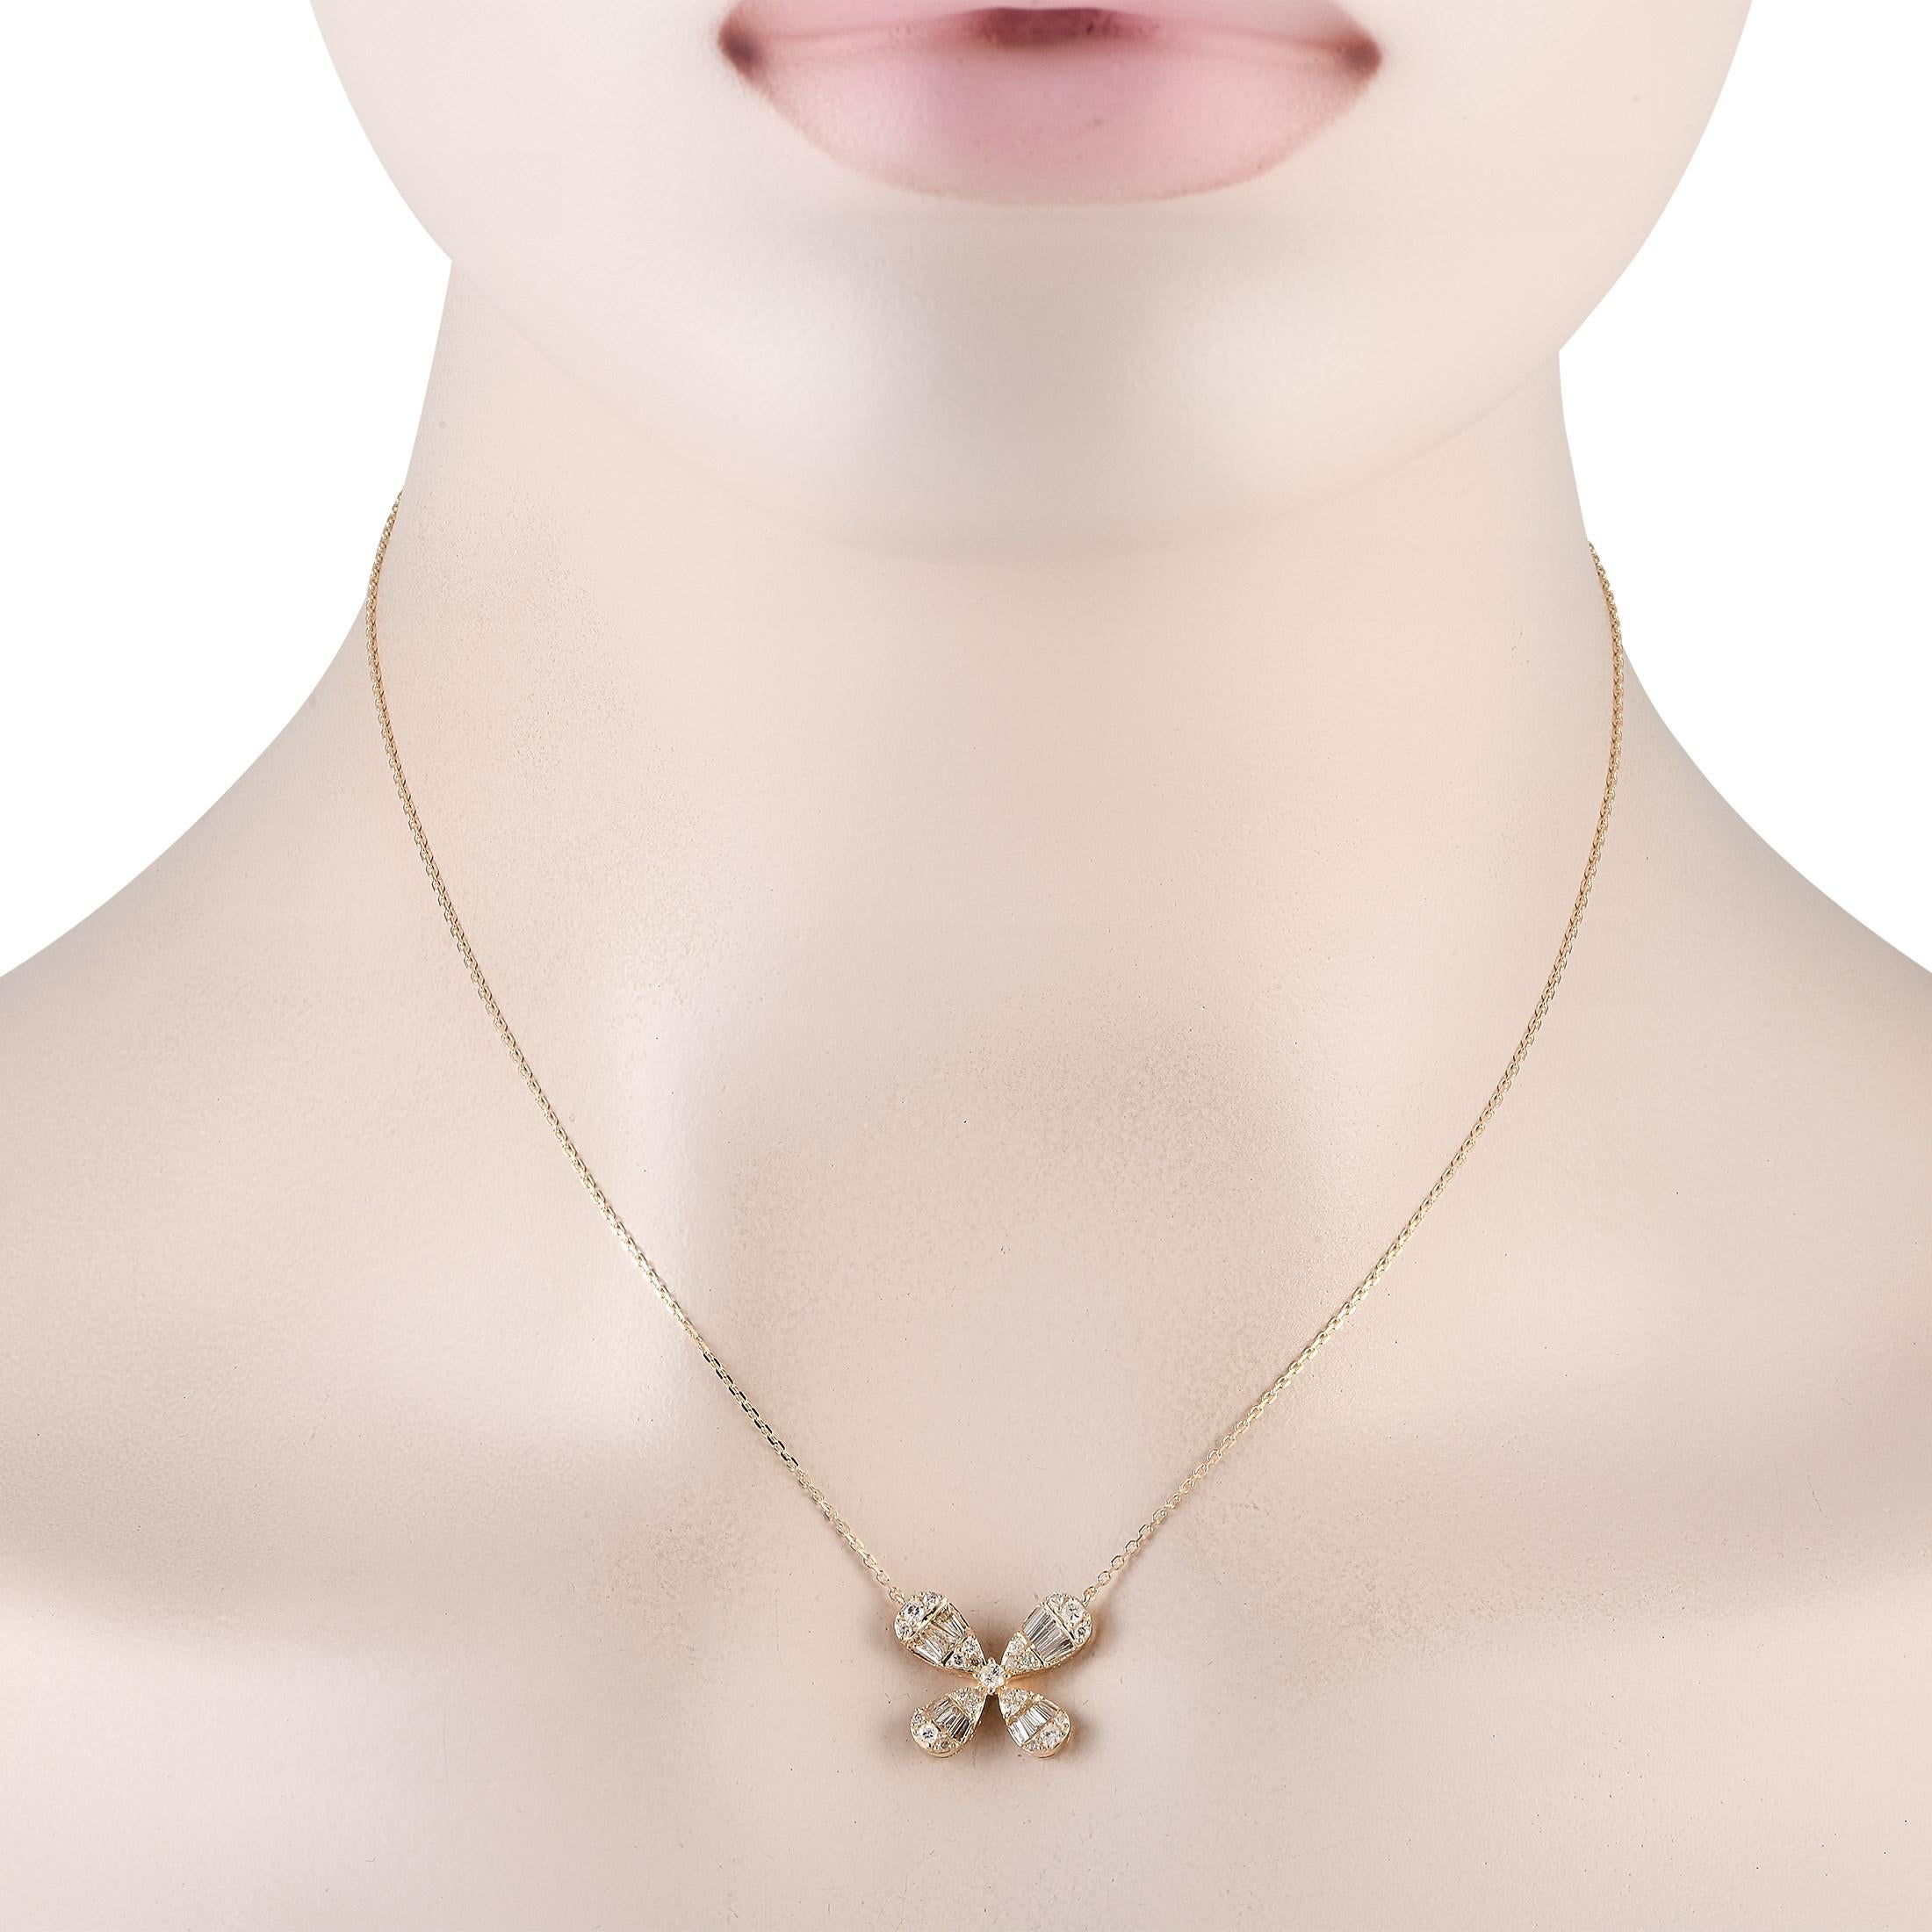 Délicat et féminin, ce collier en diamants est facile à vivre et peut instantanément rafraîchir n'importe quel look. Il se compose d'une chaîne de 16 maillons en or jaune 14 carats qui porte un pendentif inspiré d'une fleur avec quatre pétales en